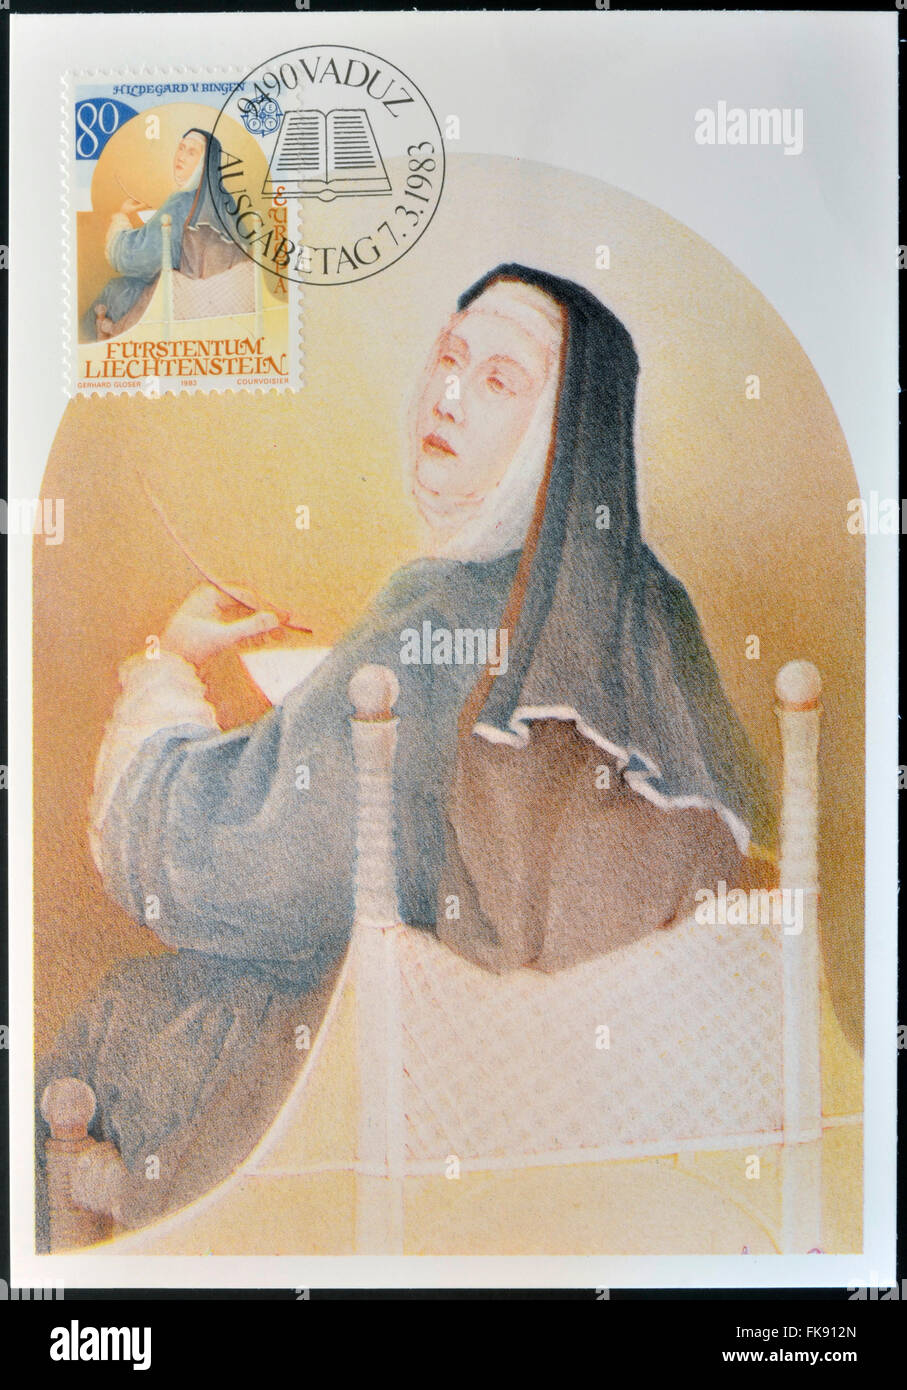 LIECHTENSTEIN - CIRCA 1983: A stamp printed in Liechtenstein shows Hildegard of Bingen, circa 1983 Stock Photo